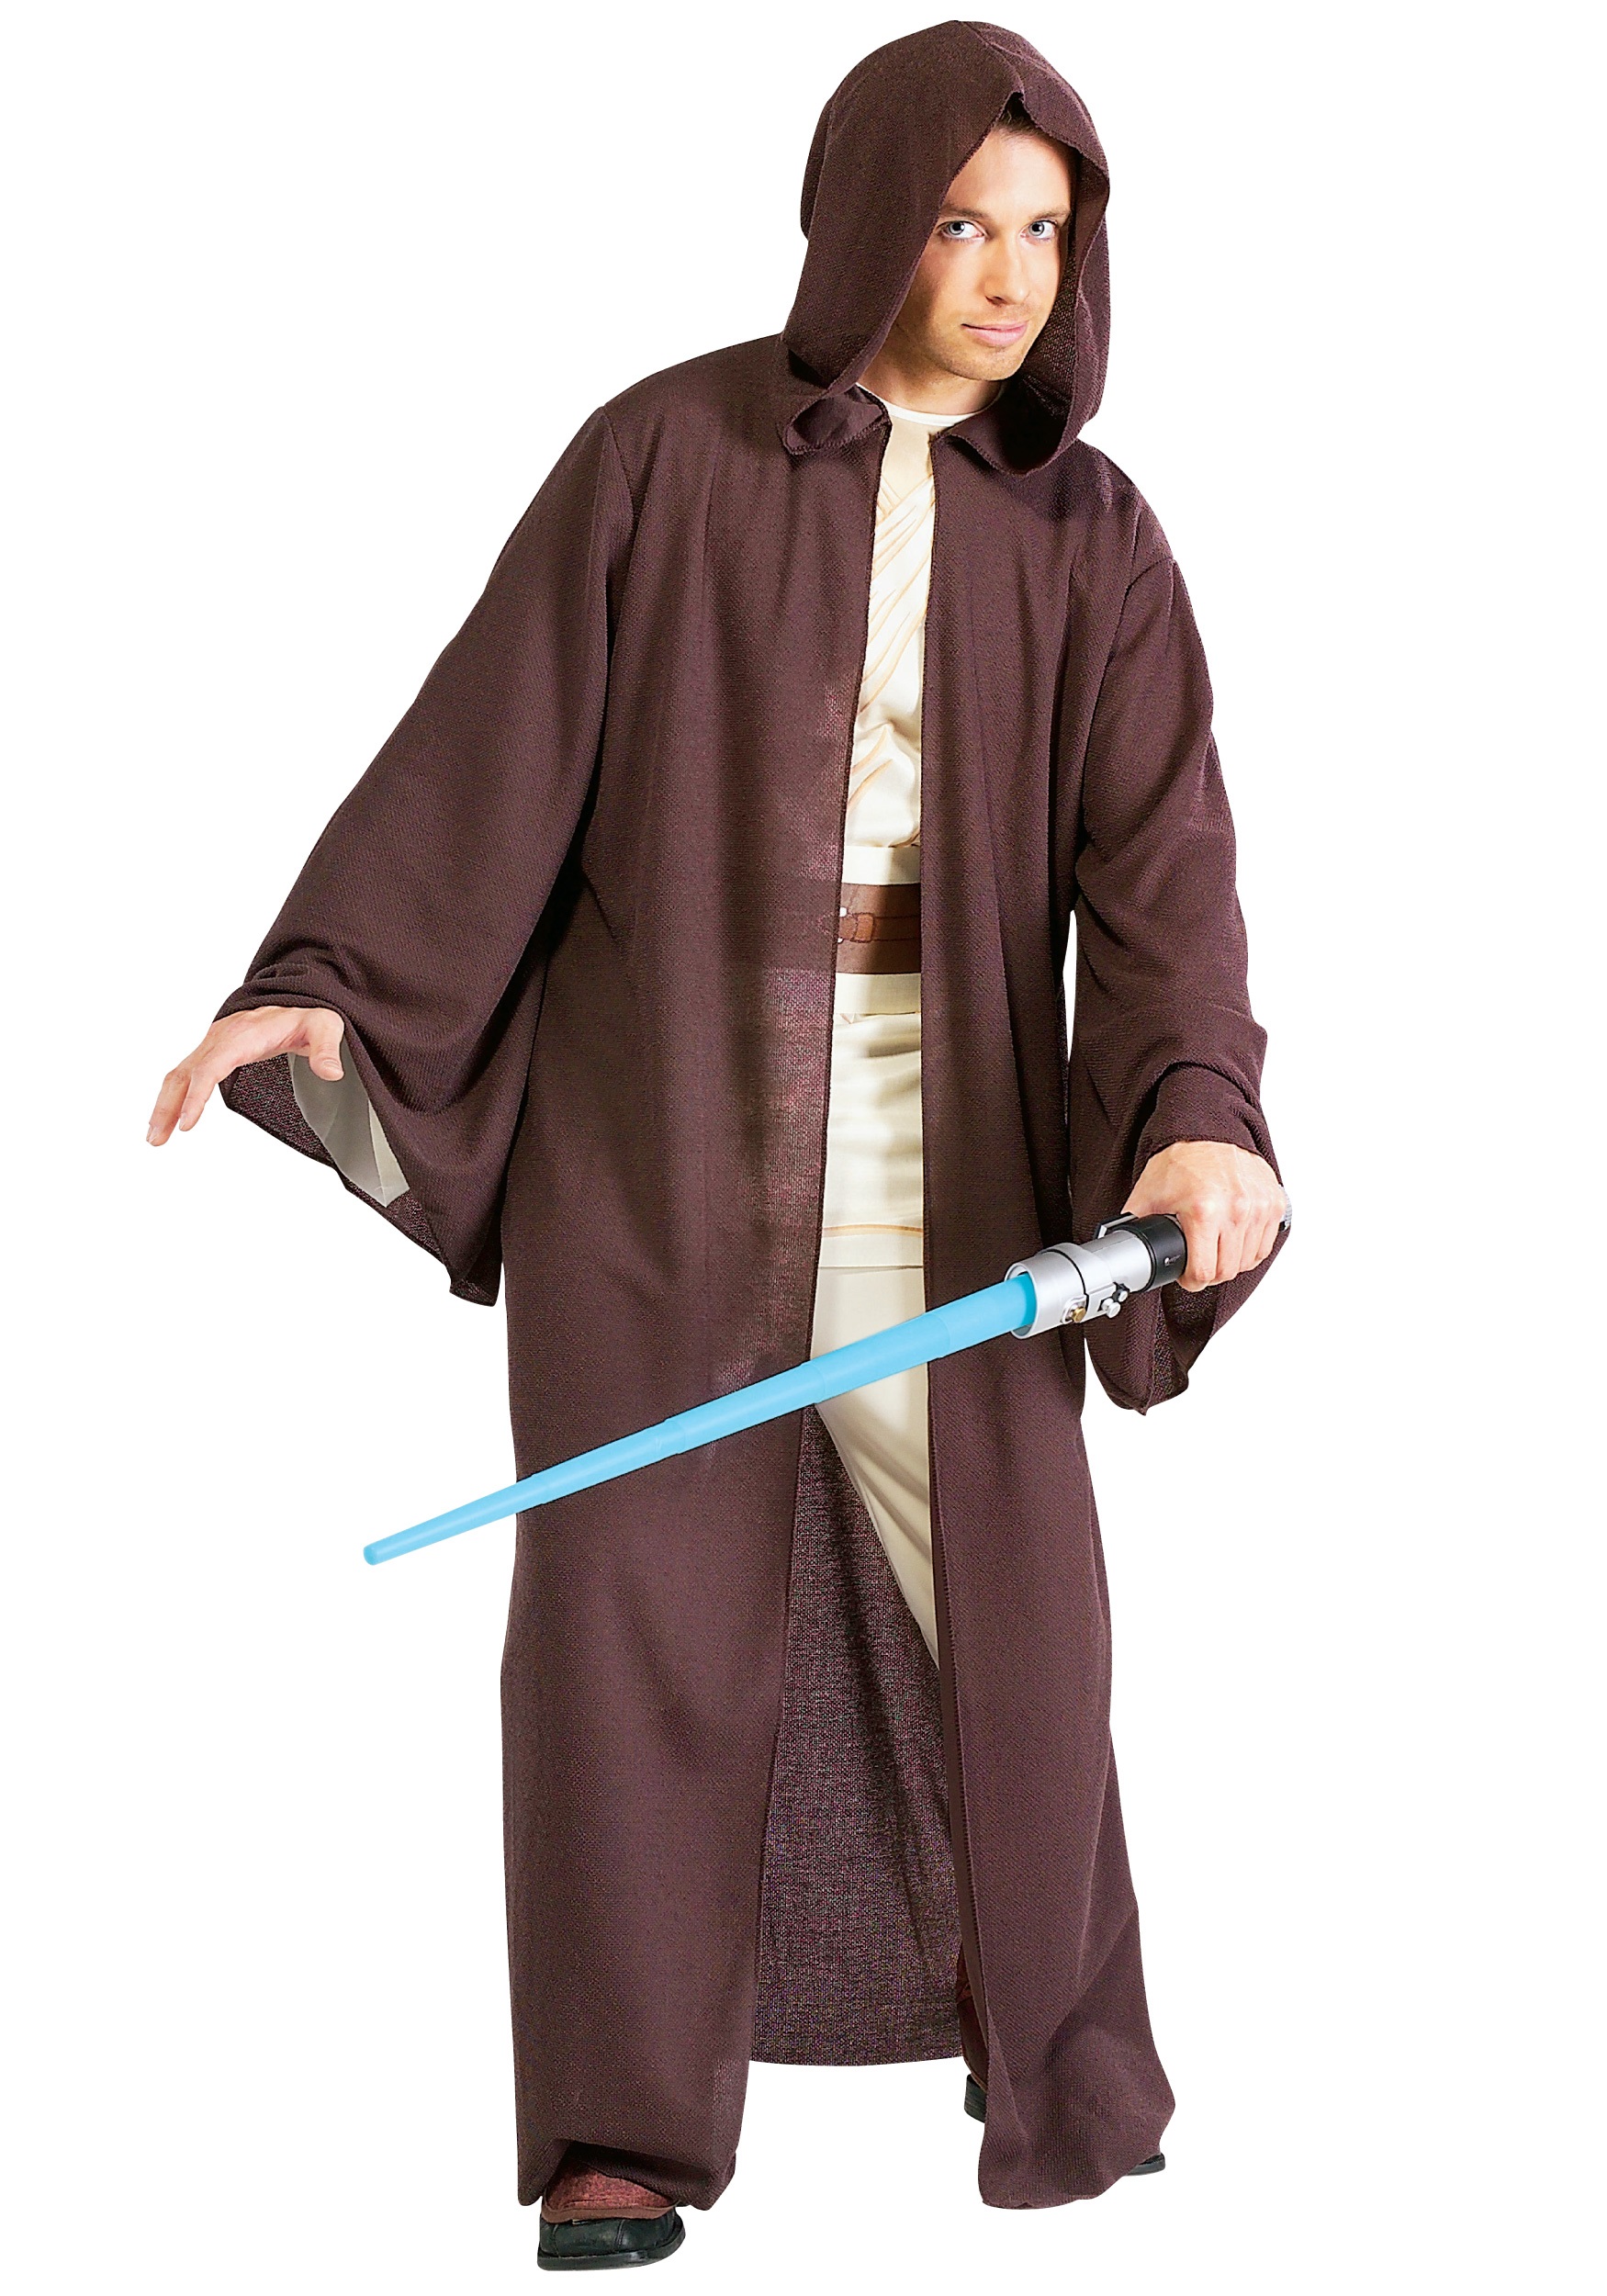 Deluxe Adult Jedi Robe Costume